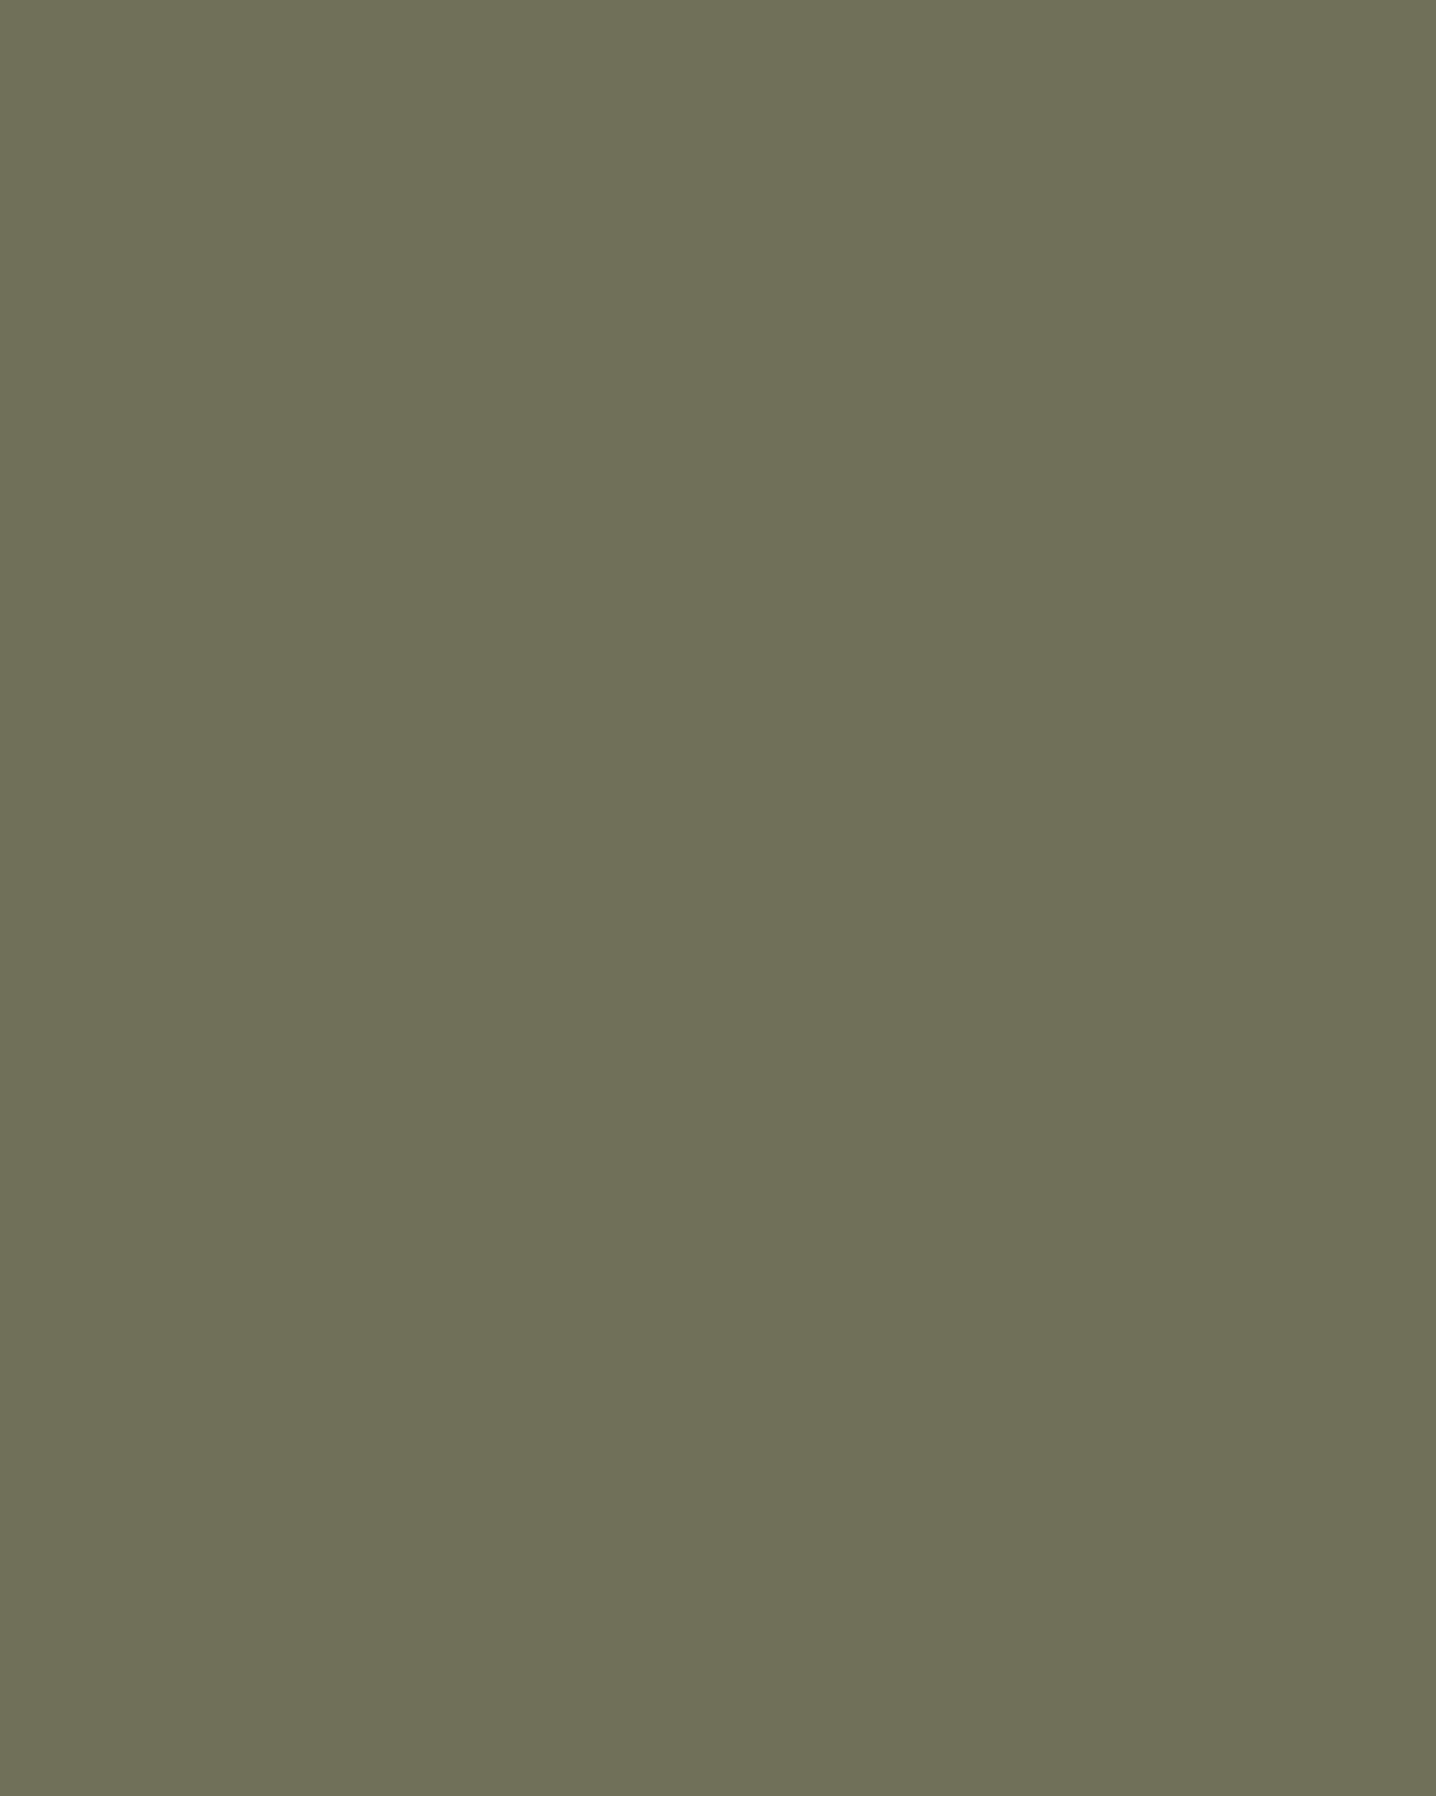 Константин Маковский. Боярышня. За чаем (фрагмент). 1914. Ульяновский областной художественный музей, Ульяновск